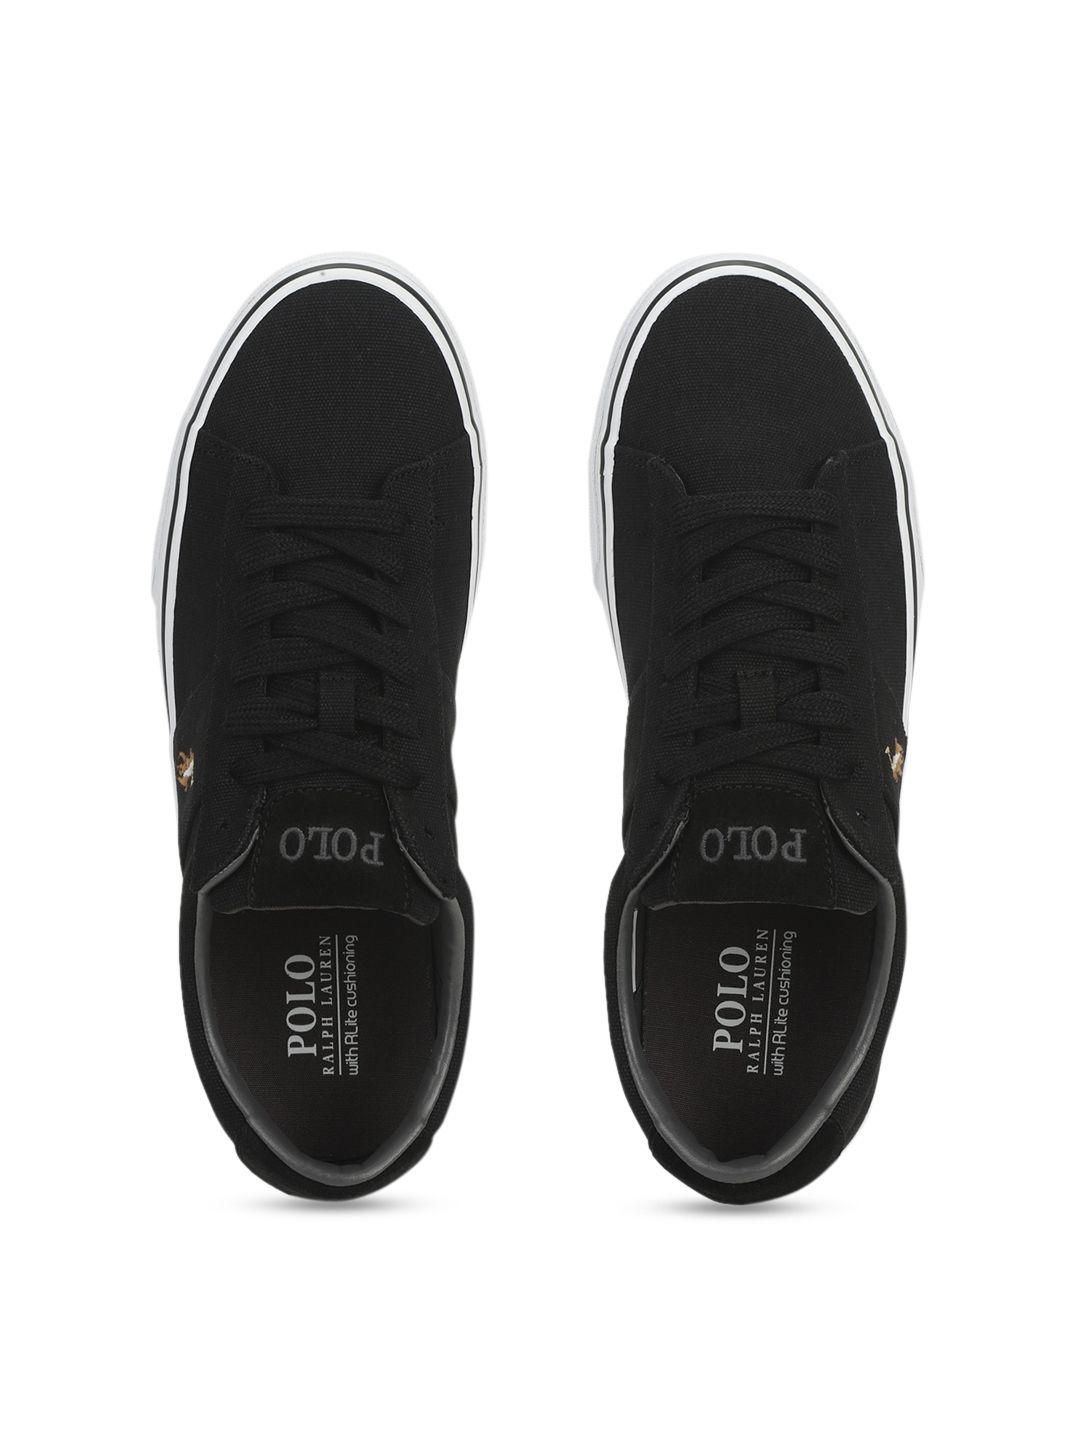 polo-ralph-lauren-men-black-sneakers